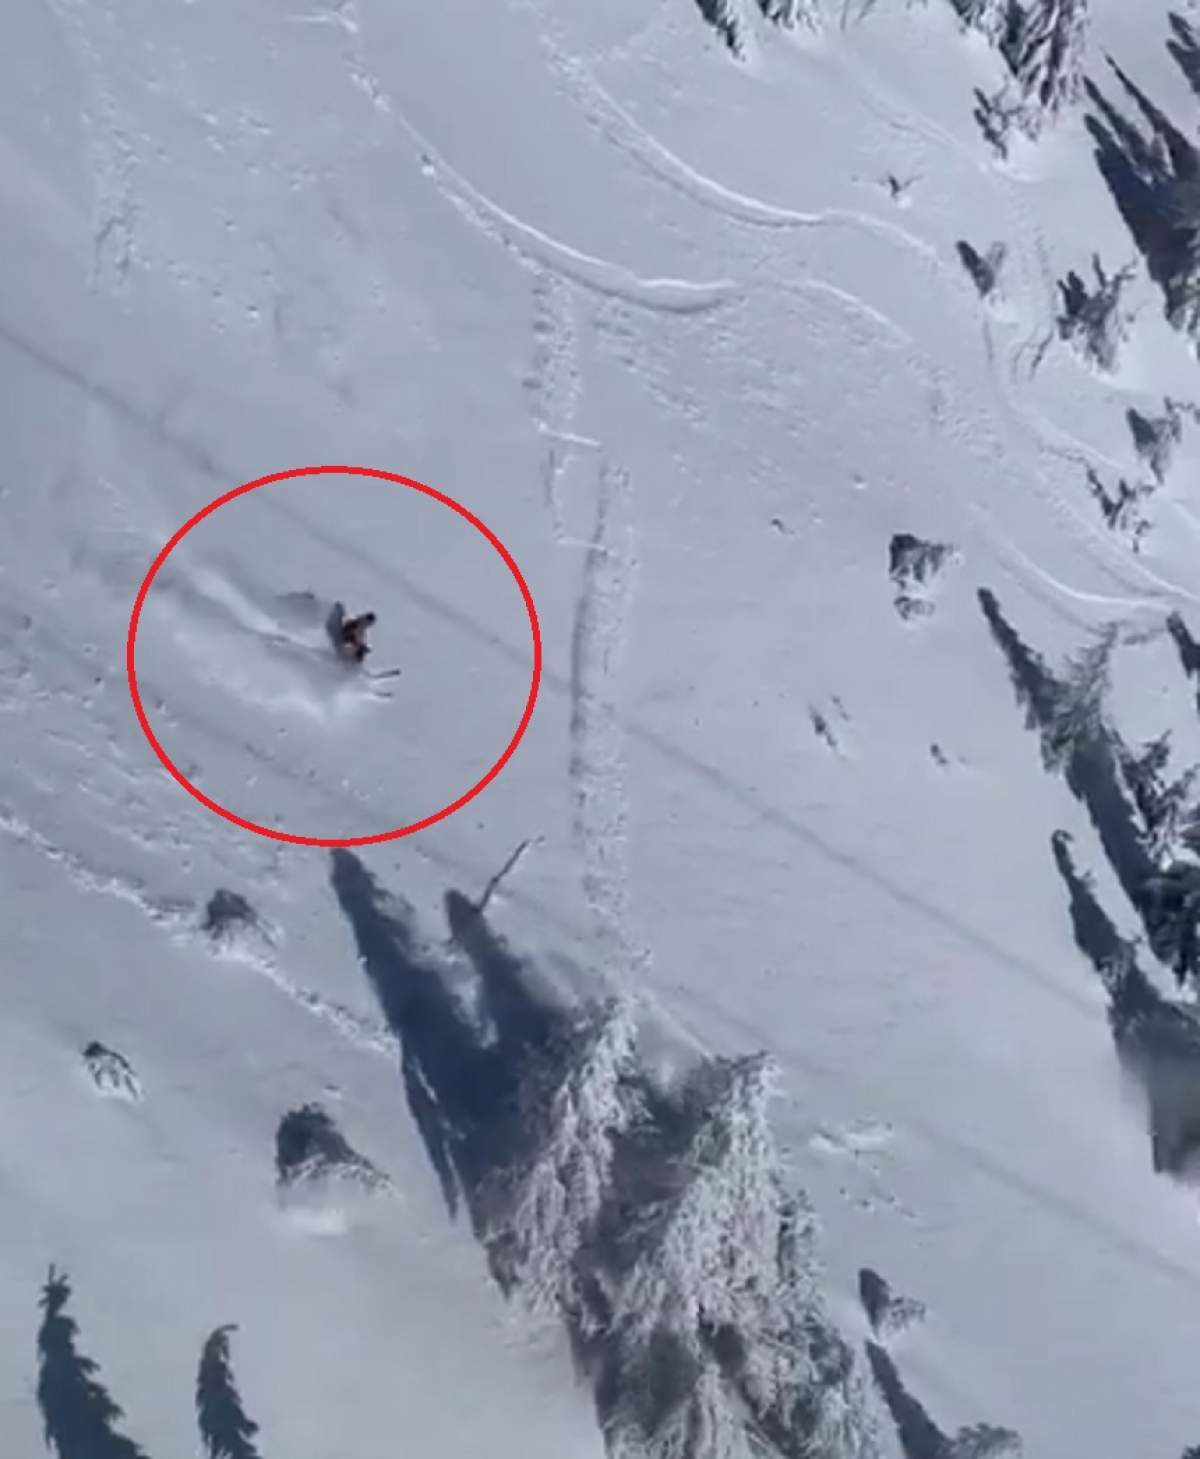 VIDEO / Un turist a fost prins de avalanșă, în Sinaia! A ignorat complet avertismentele și s-a aventurat într-un loc periculos